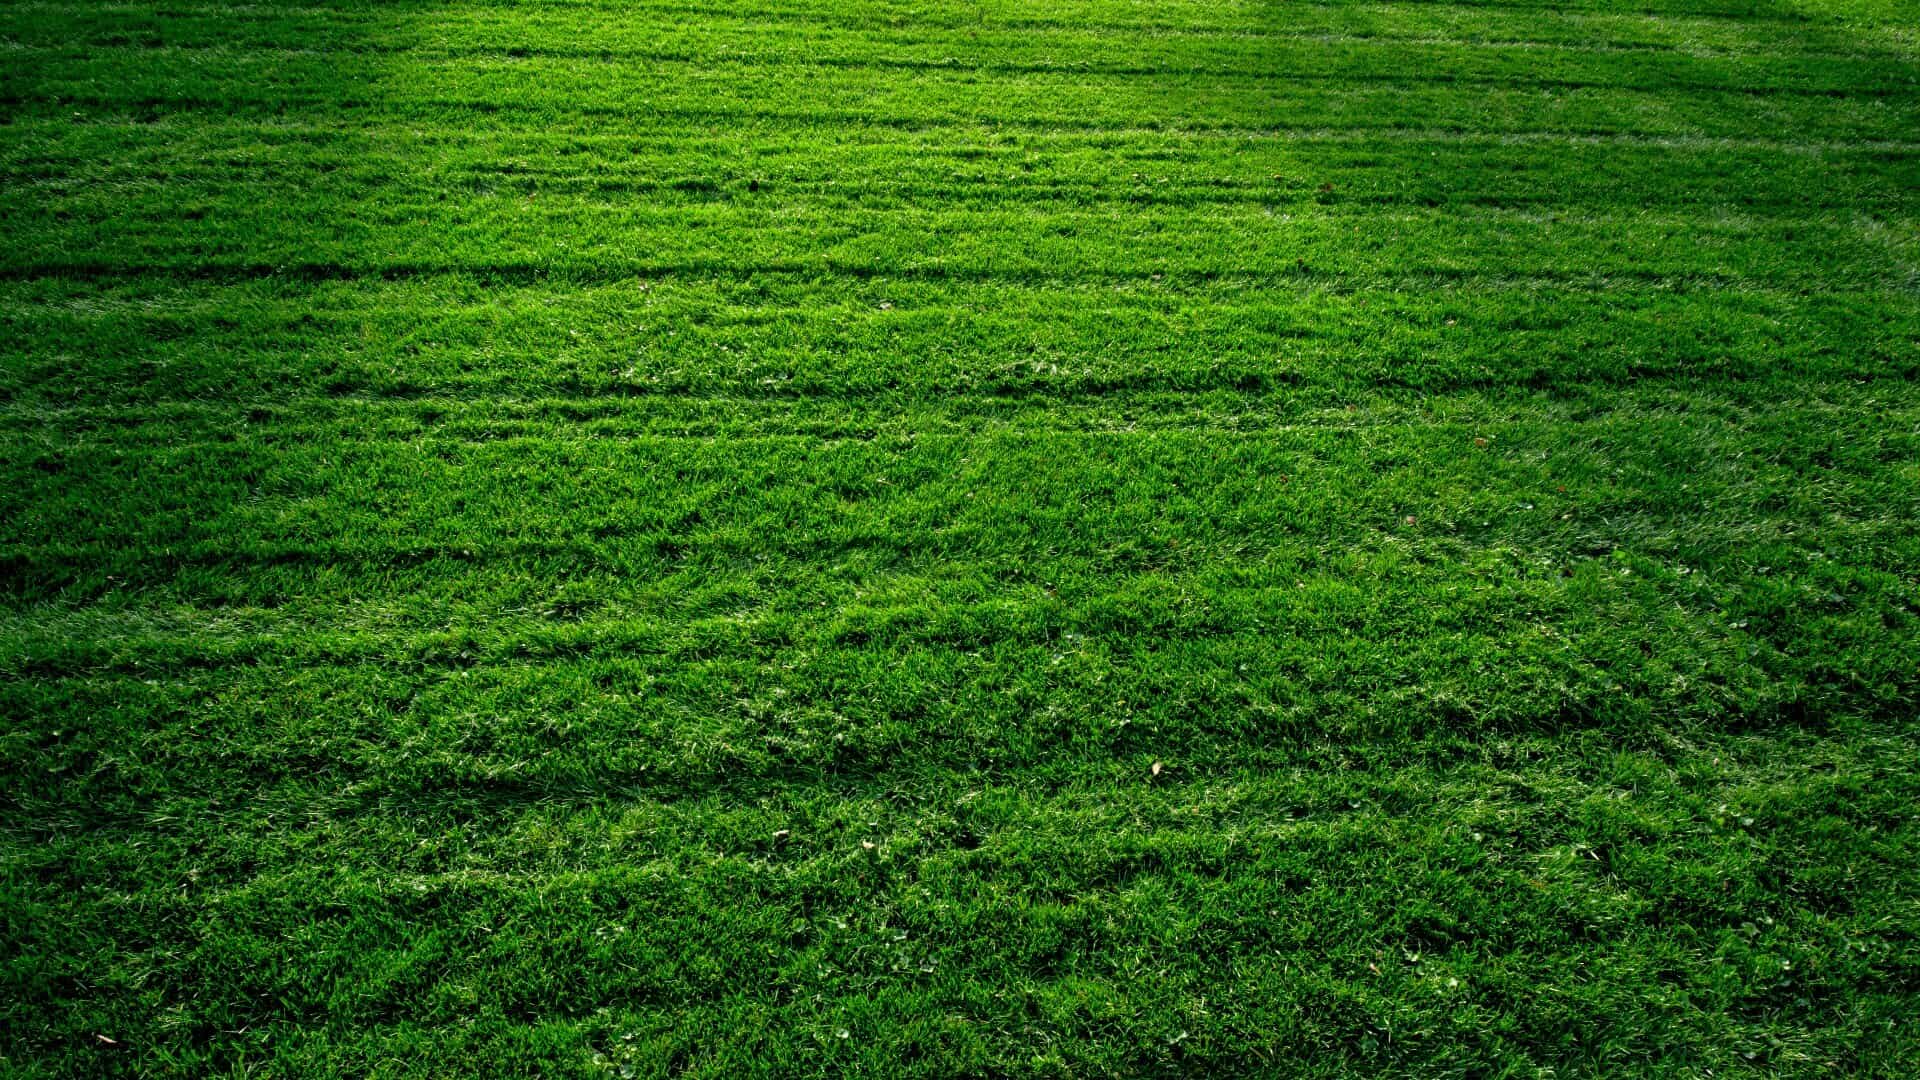 Freshly cut green lawn